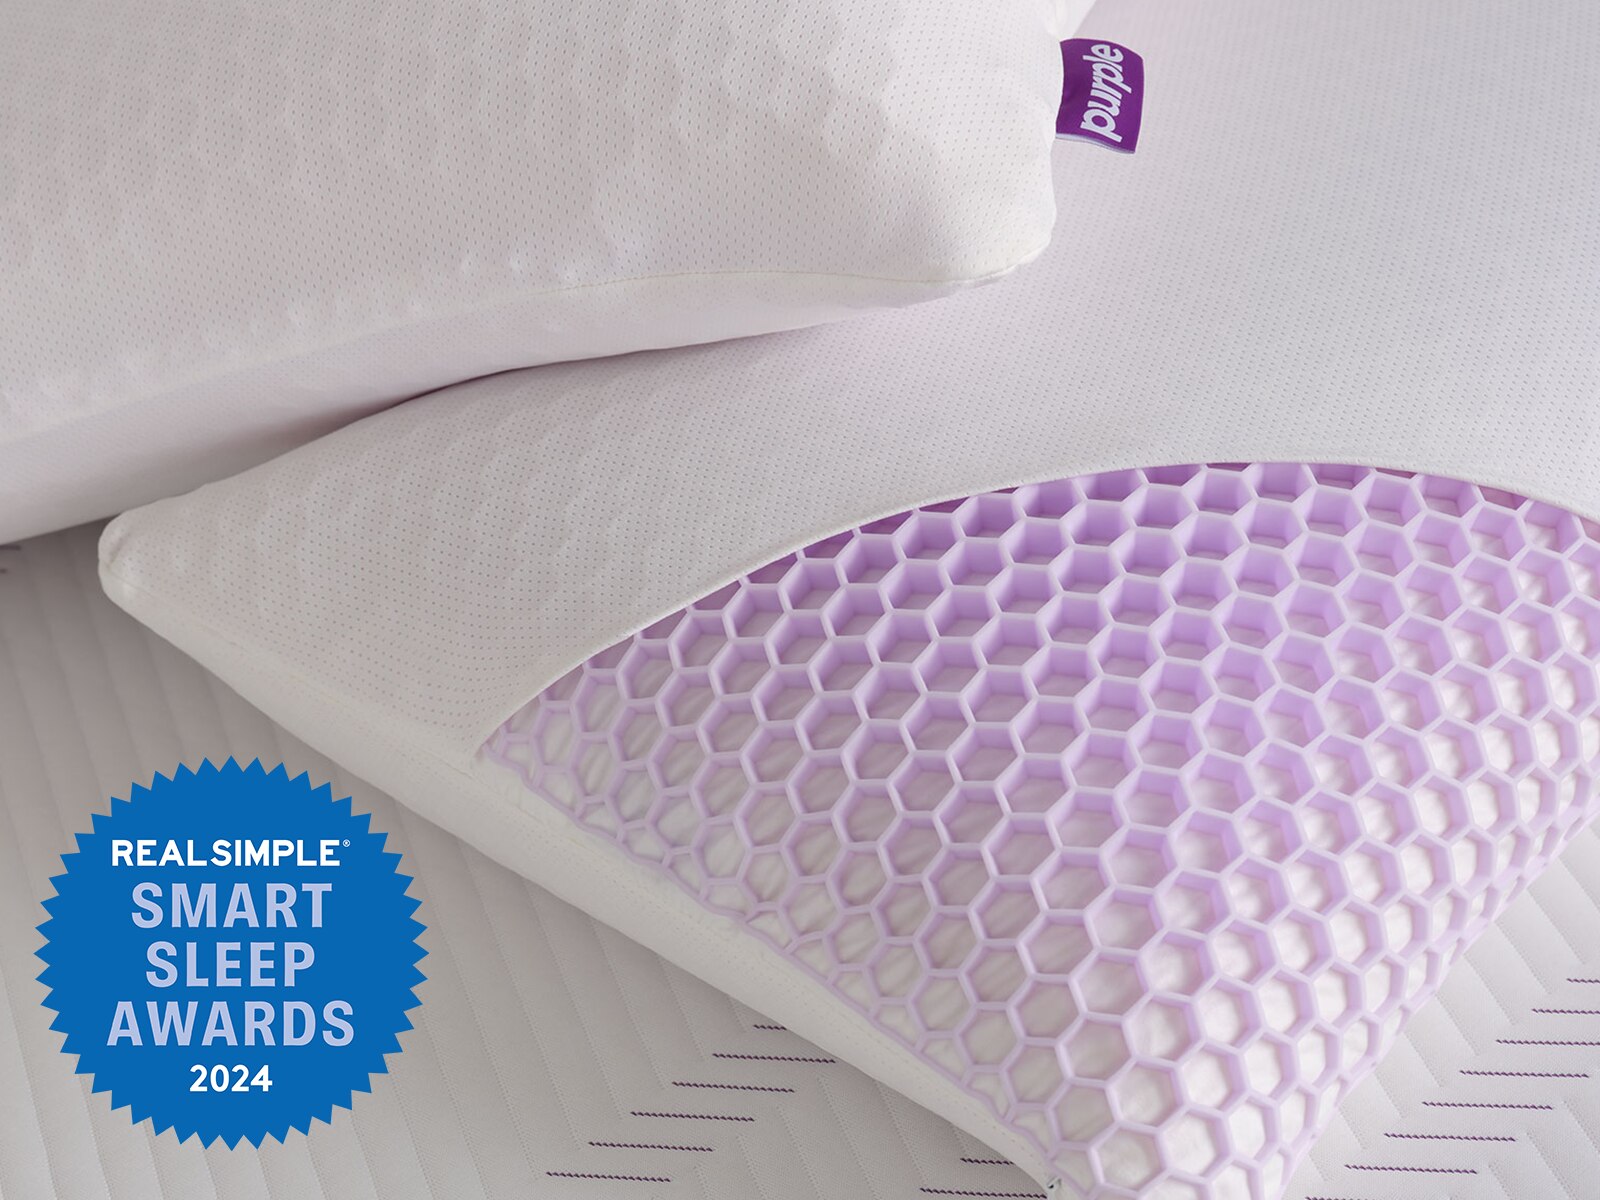 purple harmony pillow reviews